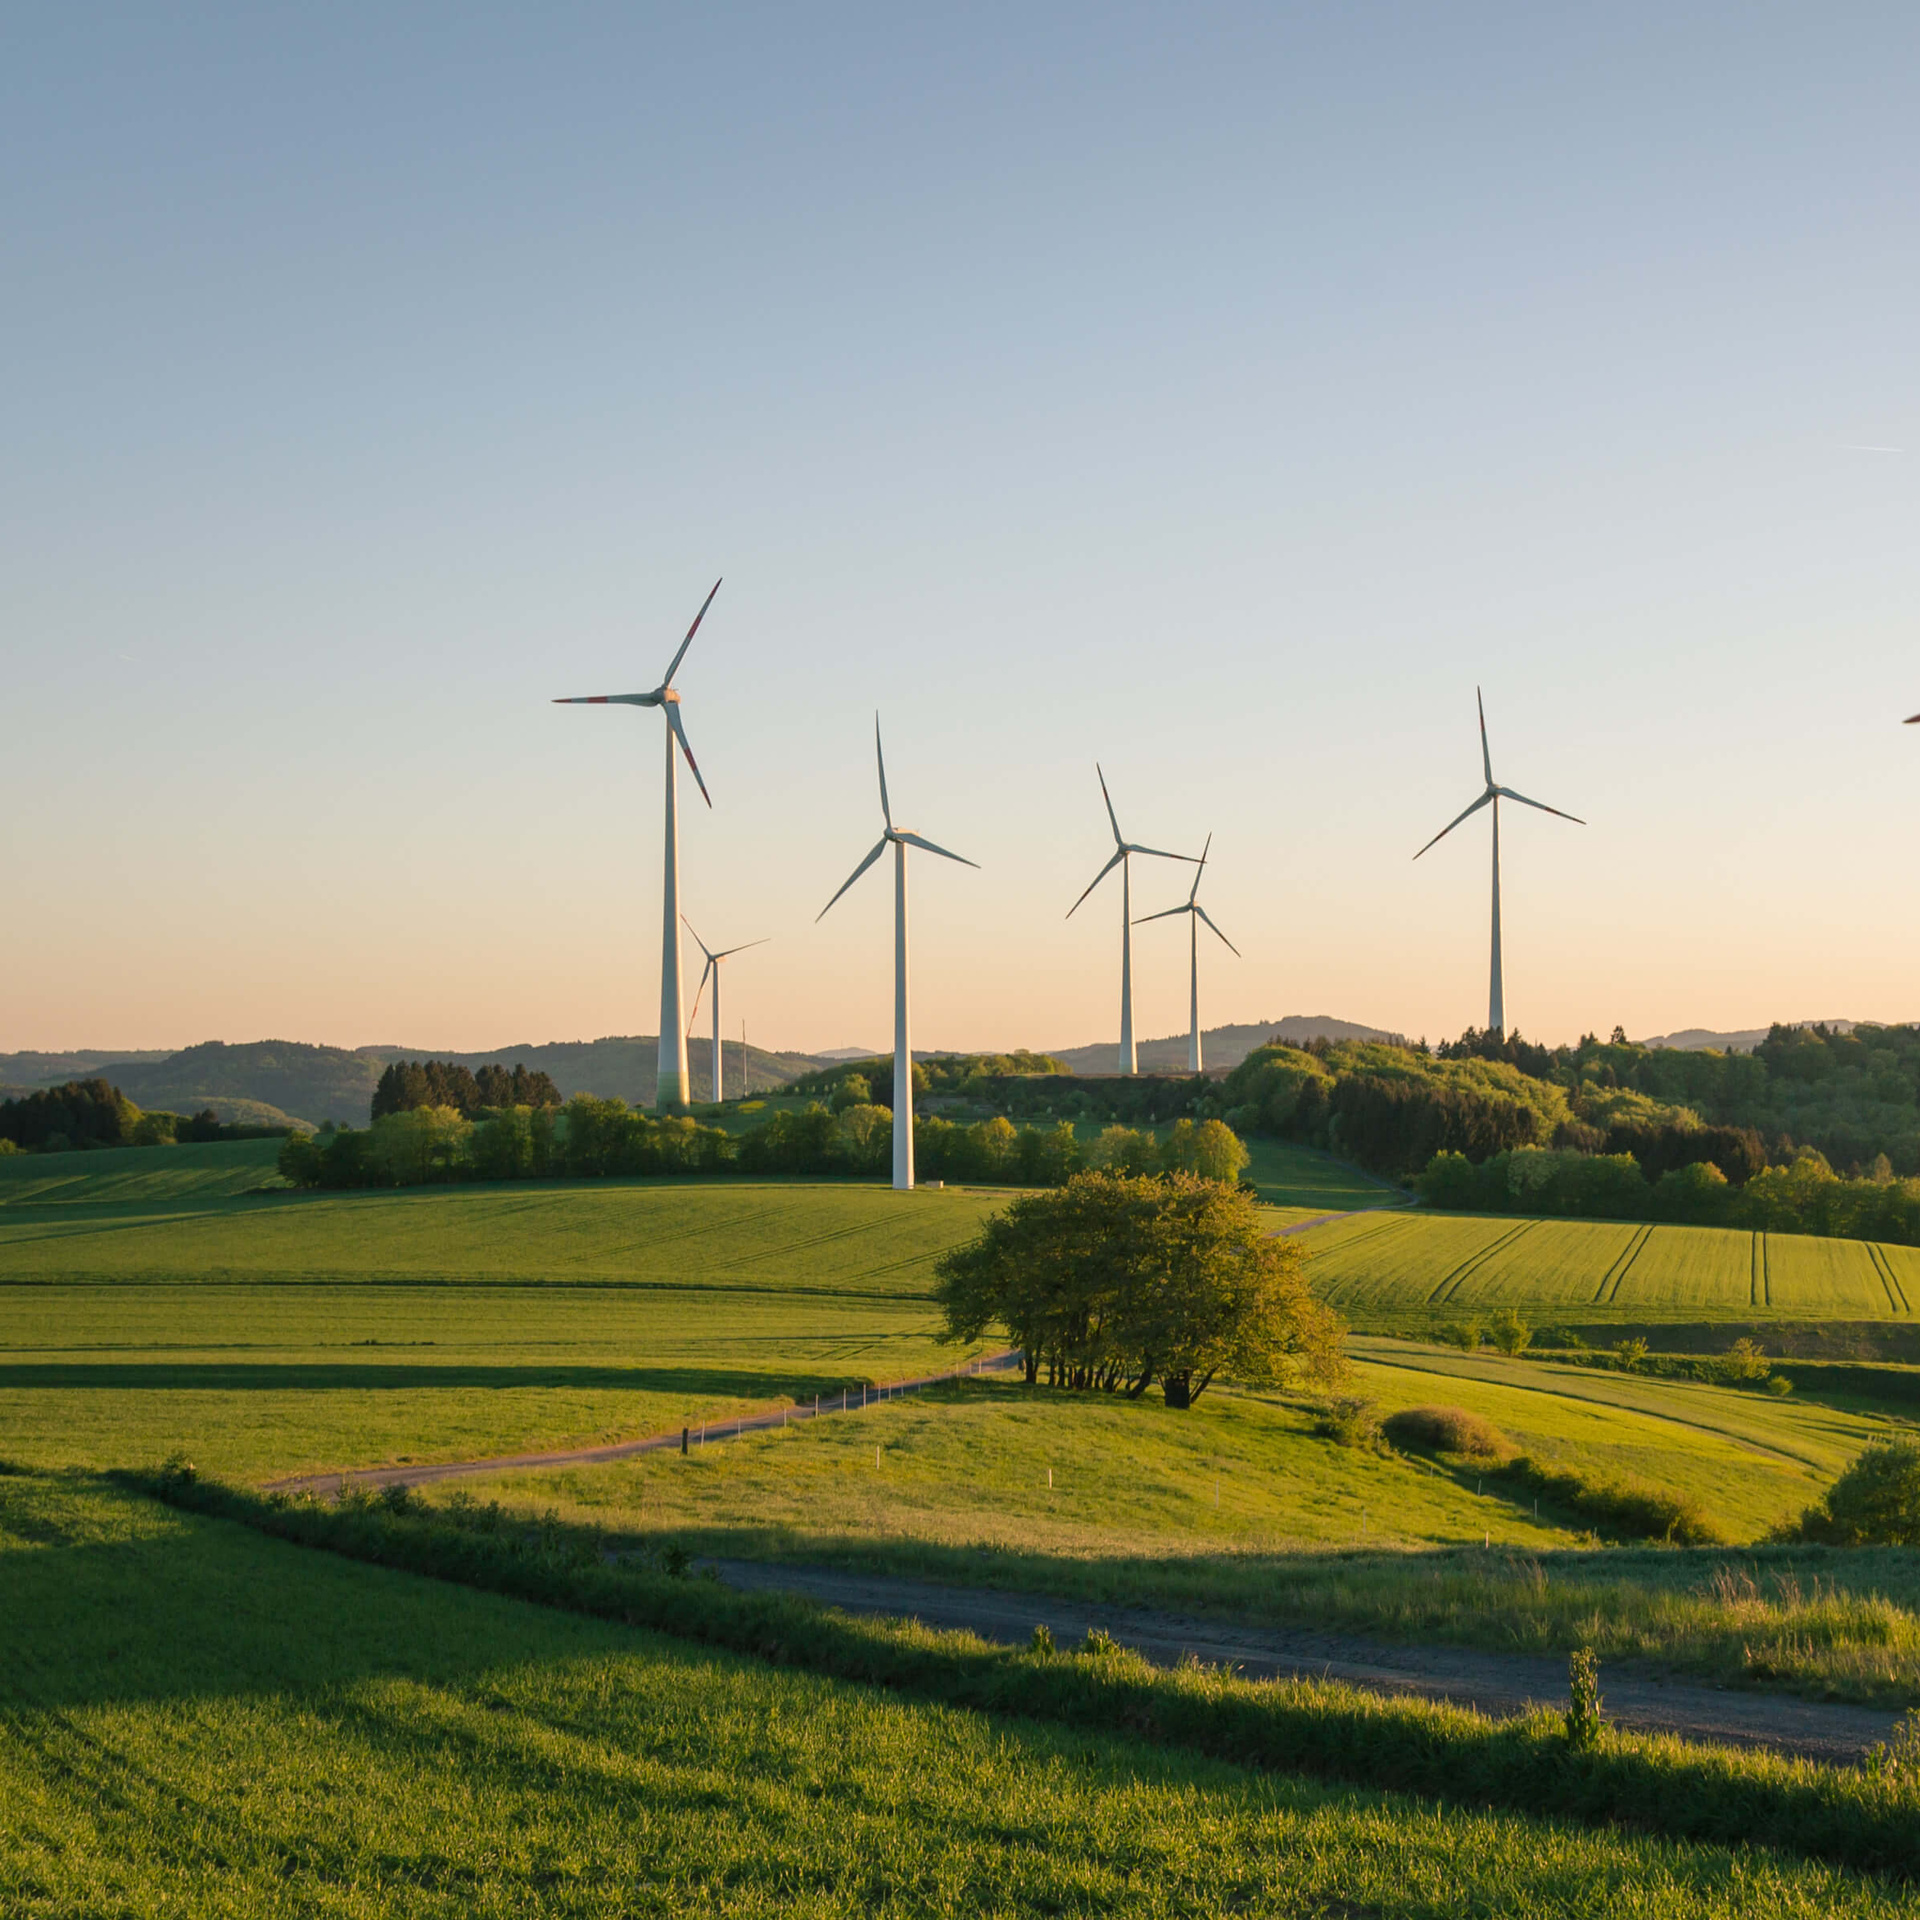 windkraftanlagen auf dem feld, erneuerbare energien, nachhaltigkeit, emissionen reduzieren, technologien